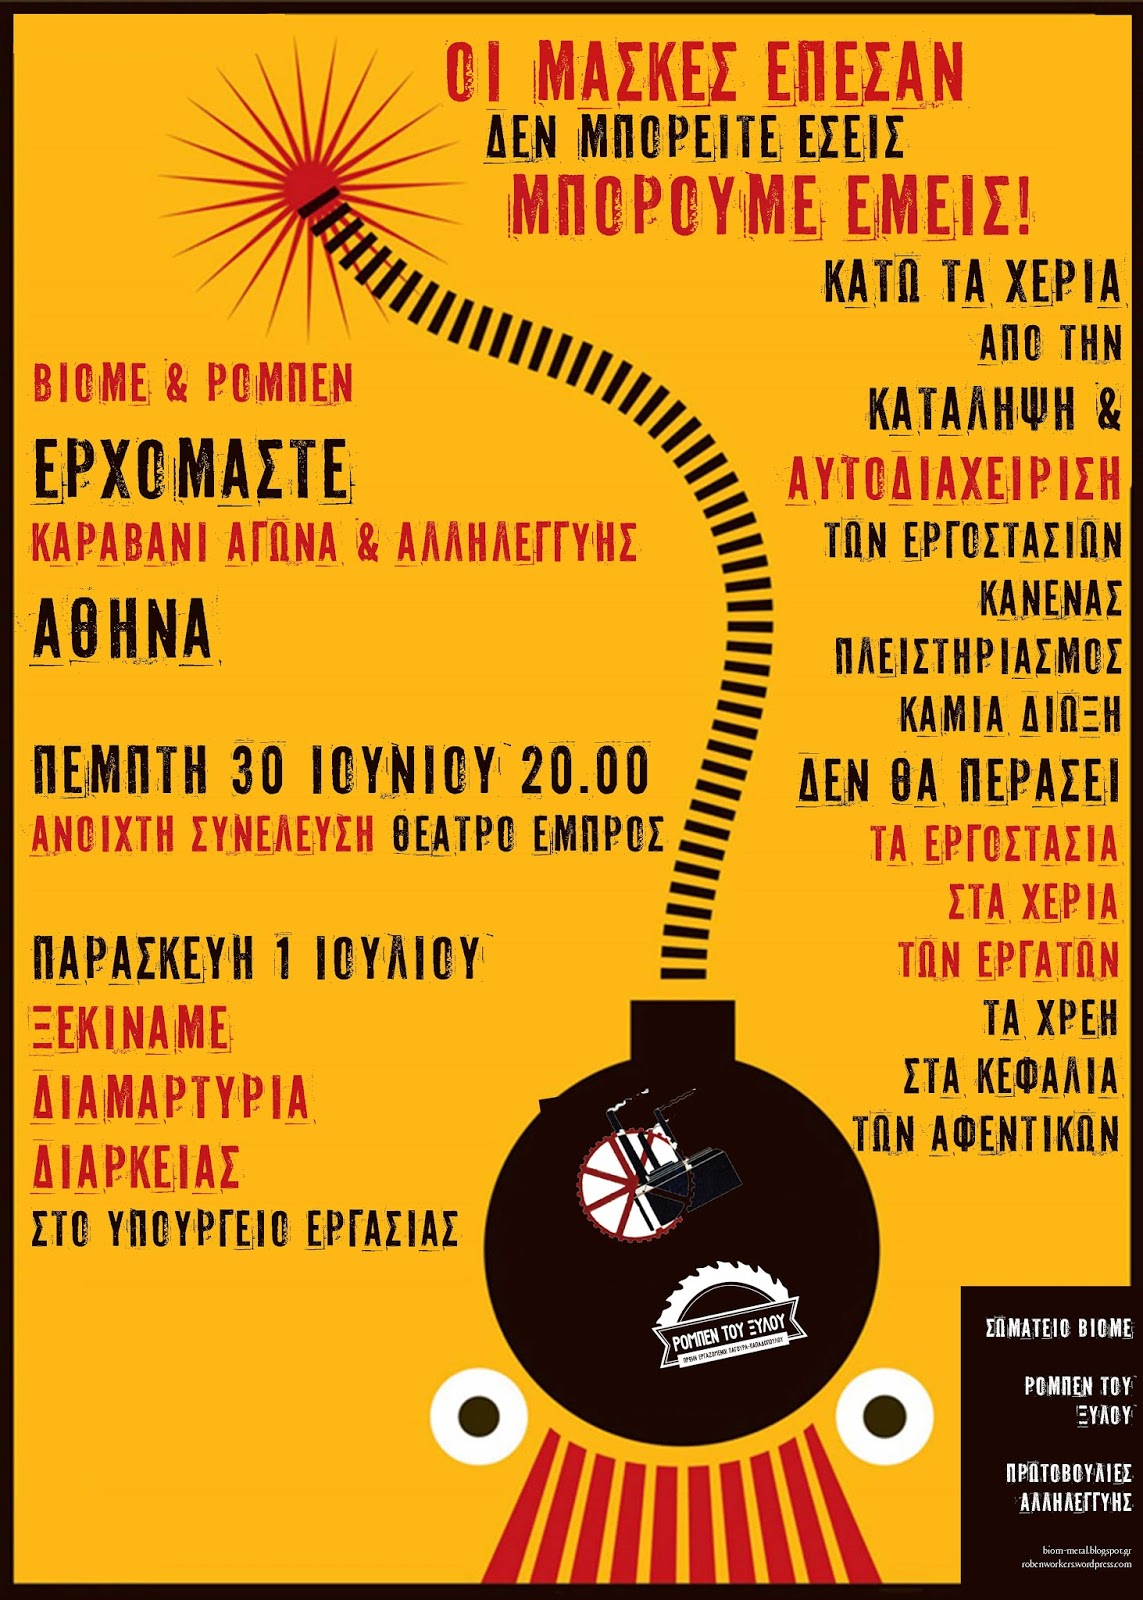 Καραβάνι Αλληλεγγύης και Αγώνα (ΒΙΟΜΕ, ΡΟΜΠΕΝ ΤΟΥ ΞΥΛΟΥ): Κινητοποιήσεις στην Αθήνα από 30/6